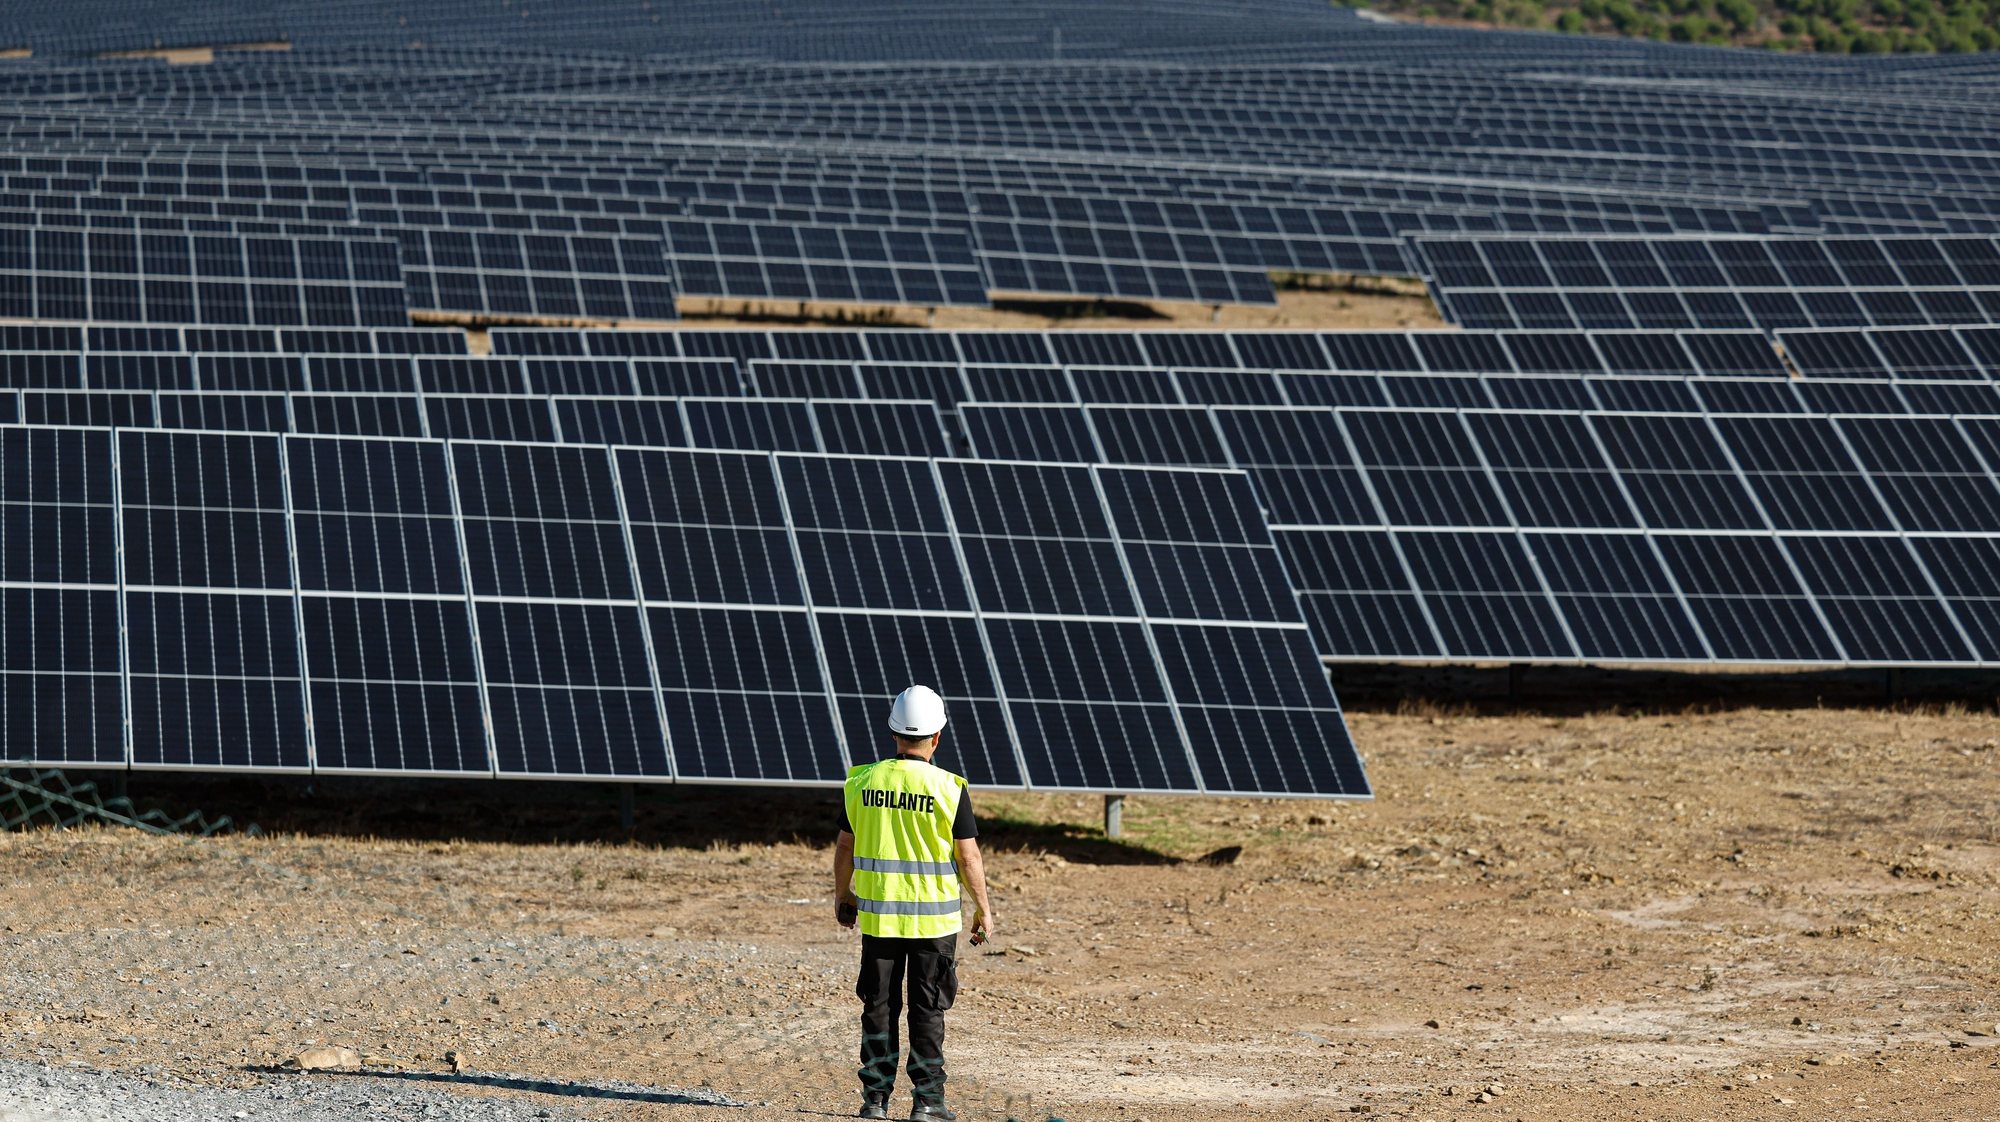 Inauguração do Parque Solar de Alcoutim, 29 de setembro de 2023. Primeiro Parque Solar da Galp em Portugal e representa o maior investimento da empresa em energia solar no país.,LUÍS FORRA/LUSA